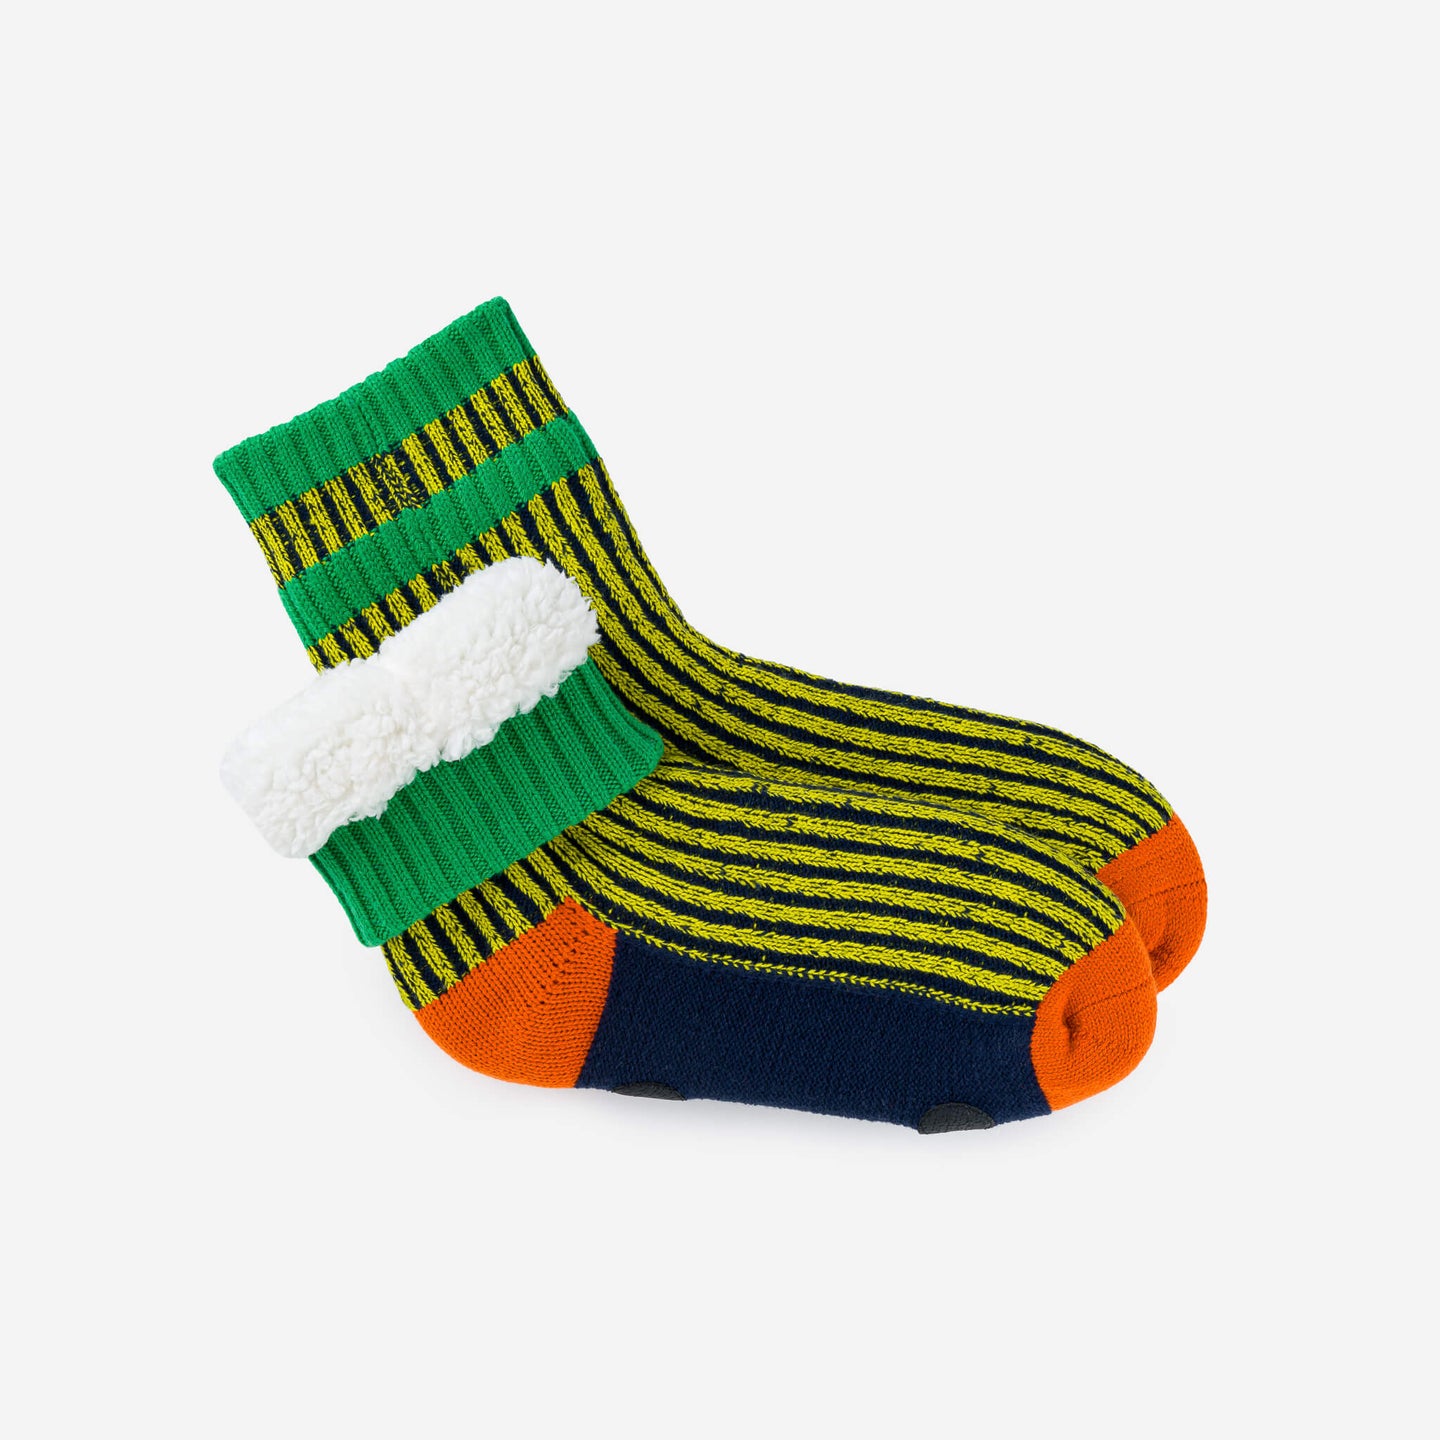 Gym Fleece Socks Rib Cozy House Knit Socks Thick Warm Relaxing